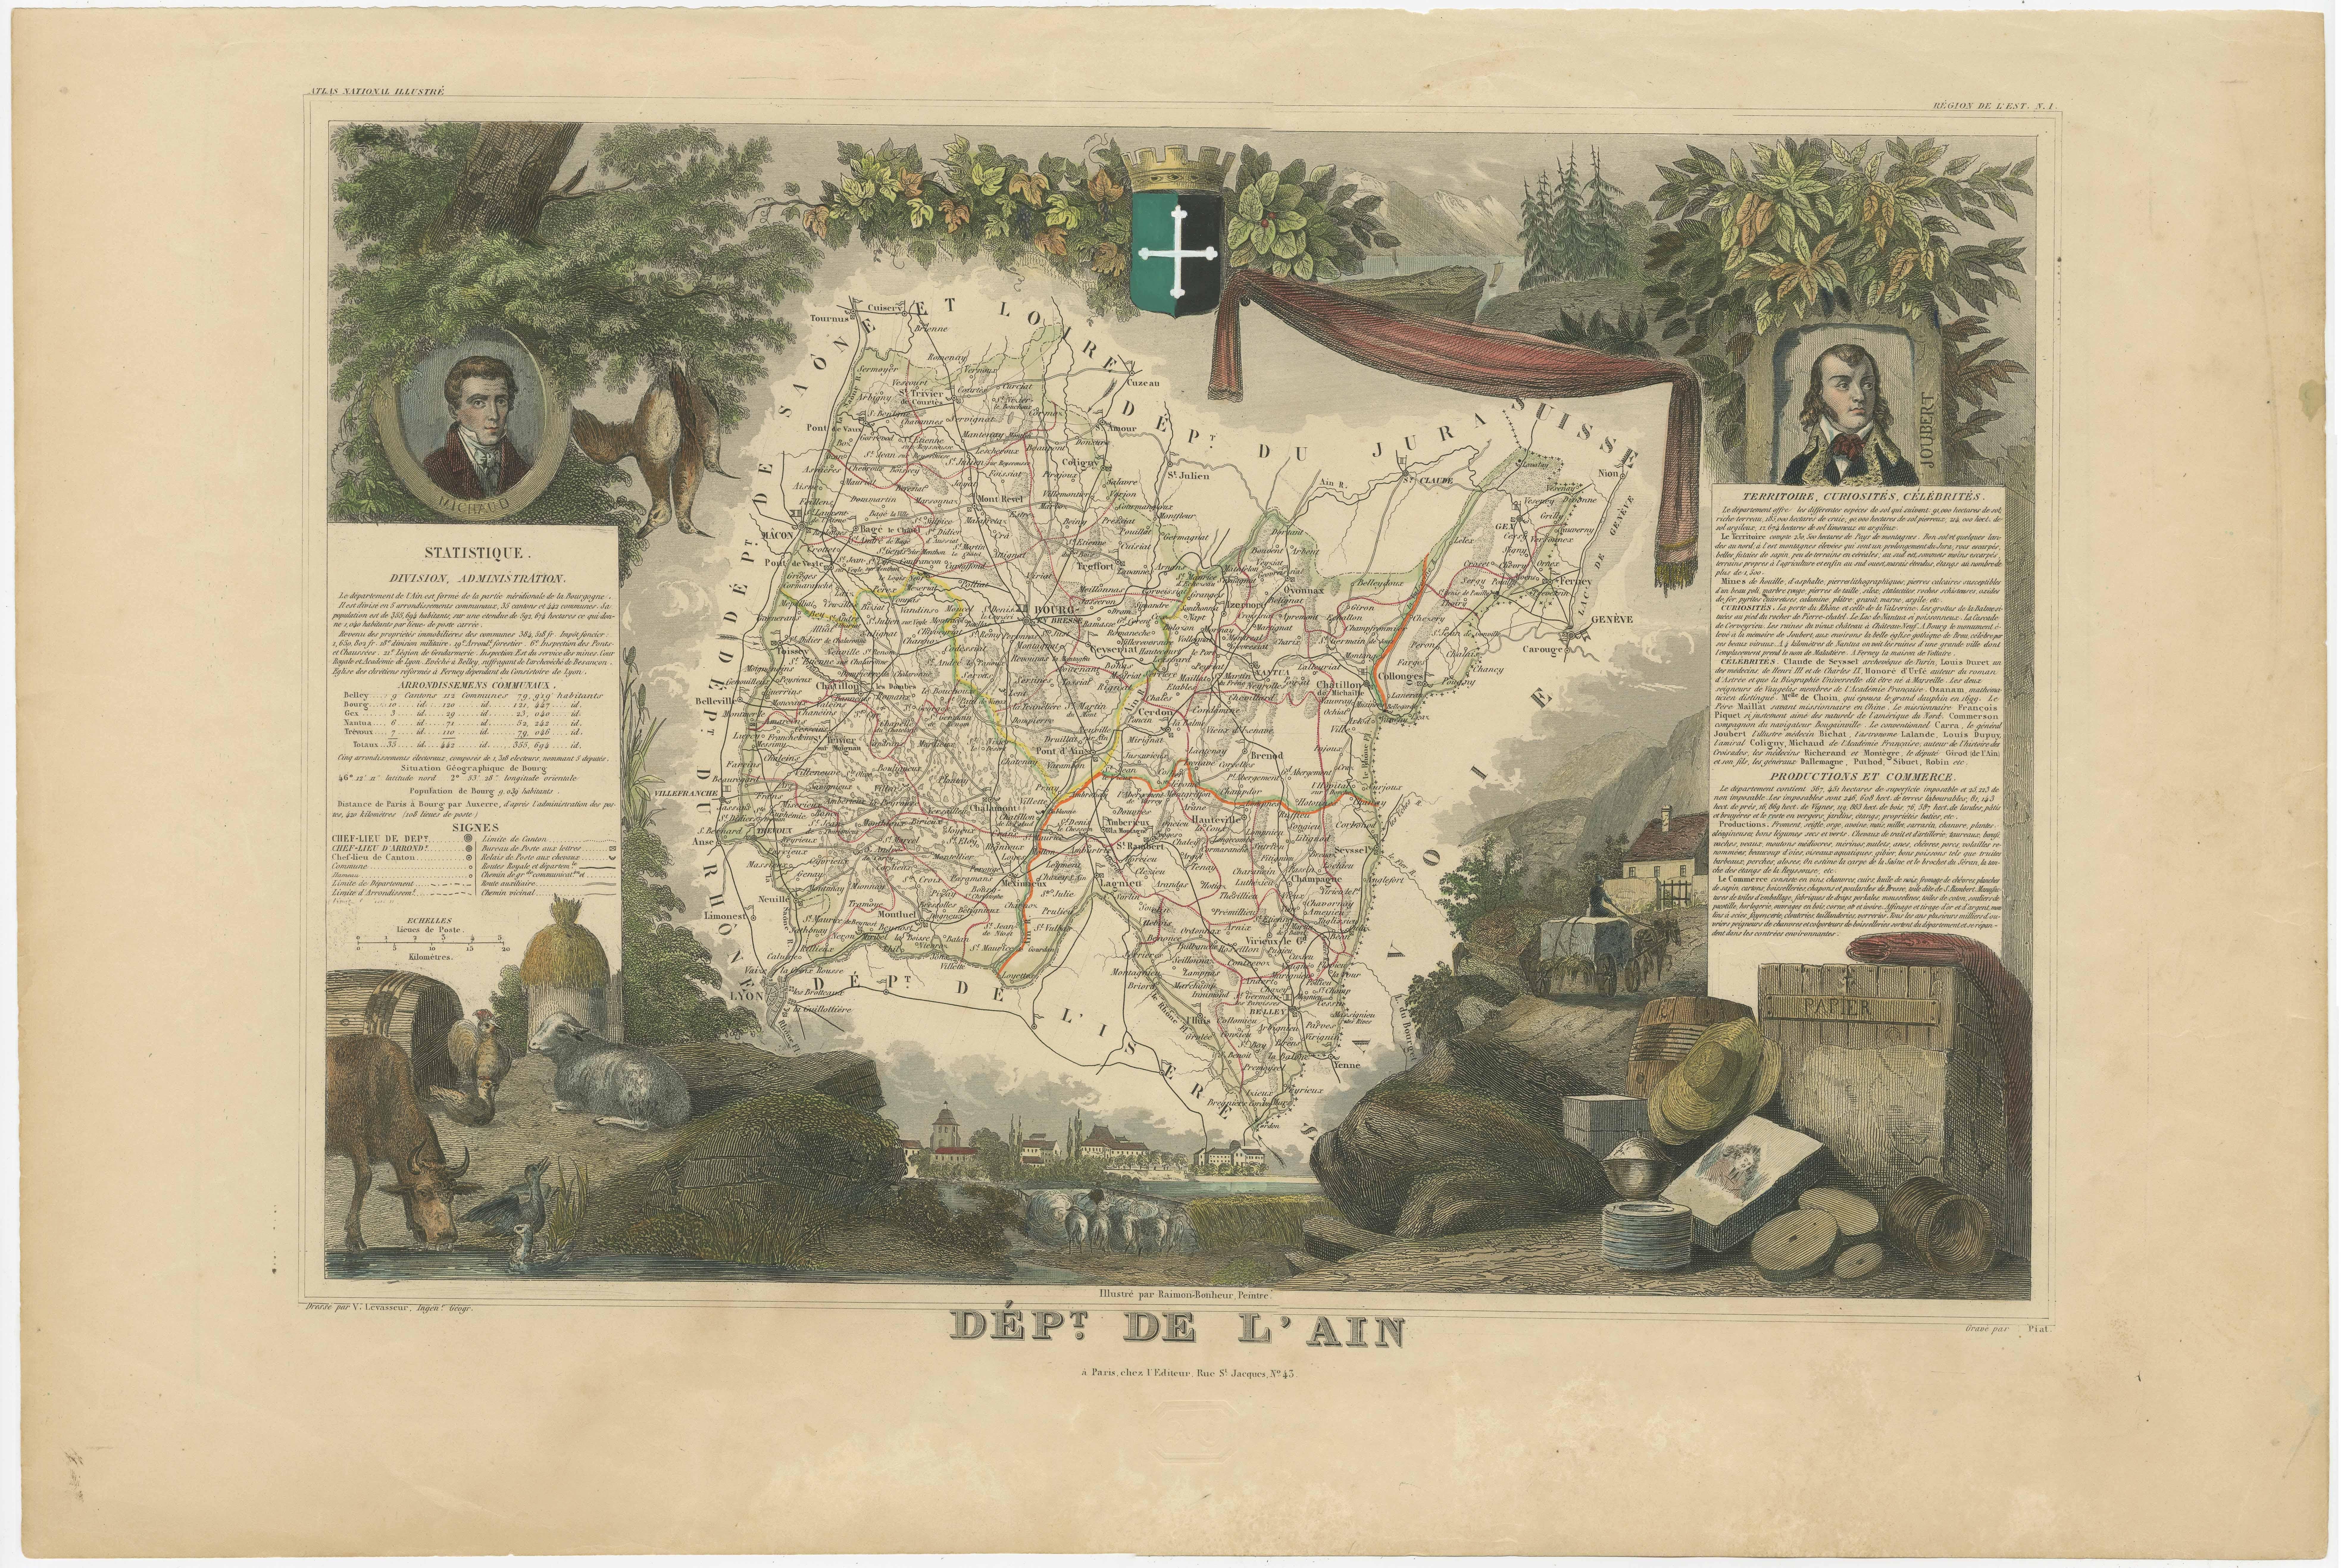 Antike Karte mit dem Titel 'Dépt. de l'Ain'. Karte des französischen Departements l'Ain, Frankreich. Dieses Gebiet Frankreichs ist bekannt für seine Bugey-Weine, die im Allgemeinen aromatisch und weiß sind. Sie ist auch für ihren feinen